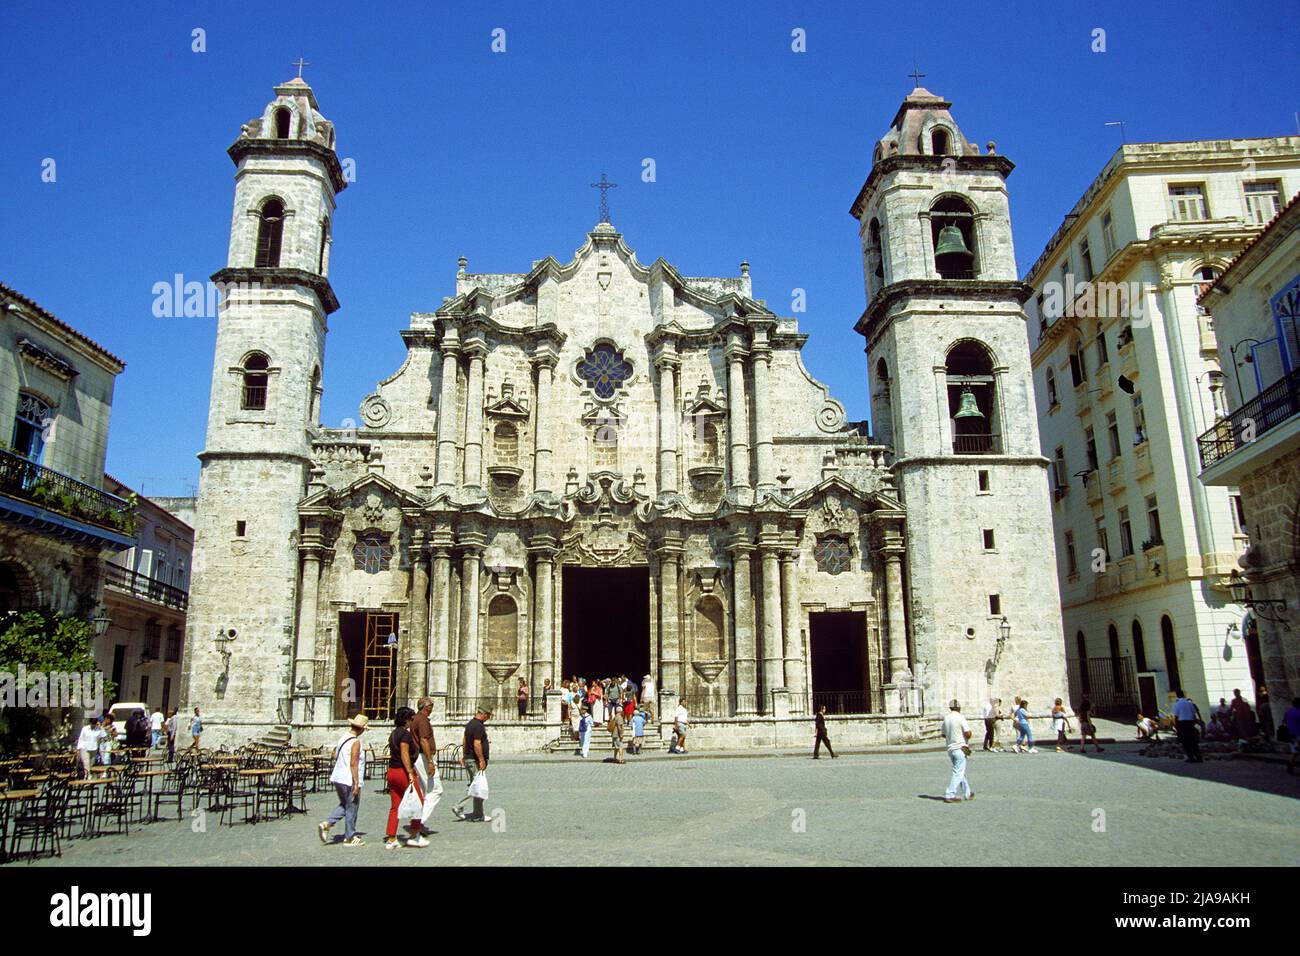 Catedral de San Cristobal, Cathédrale de la Havane sur la place de la Cathédrale, vieille ville historique de la Havane, Cuba, Caraïbes Banque D'Images